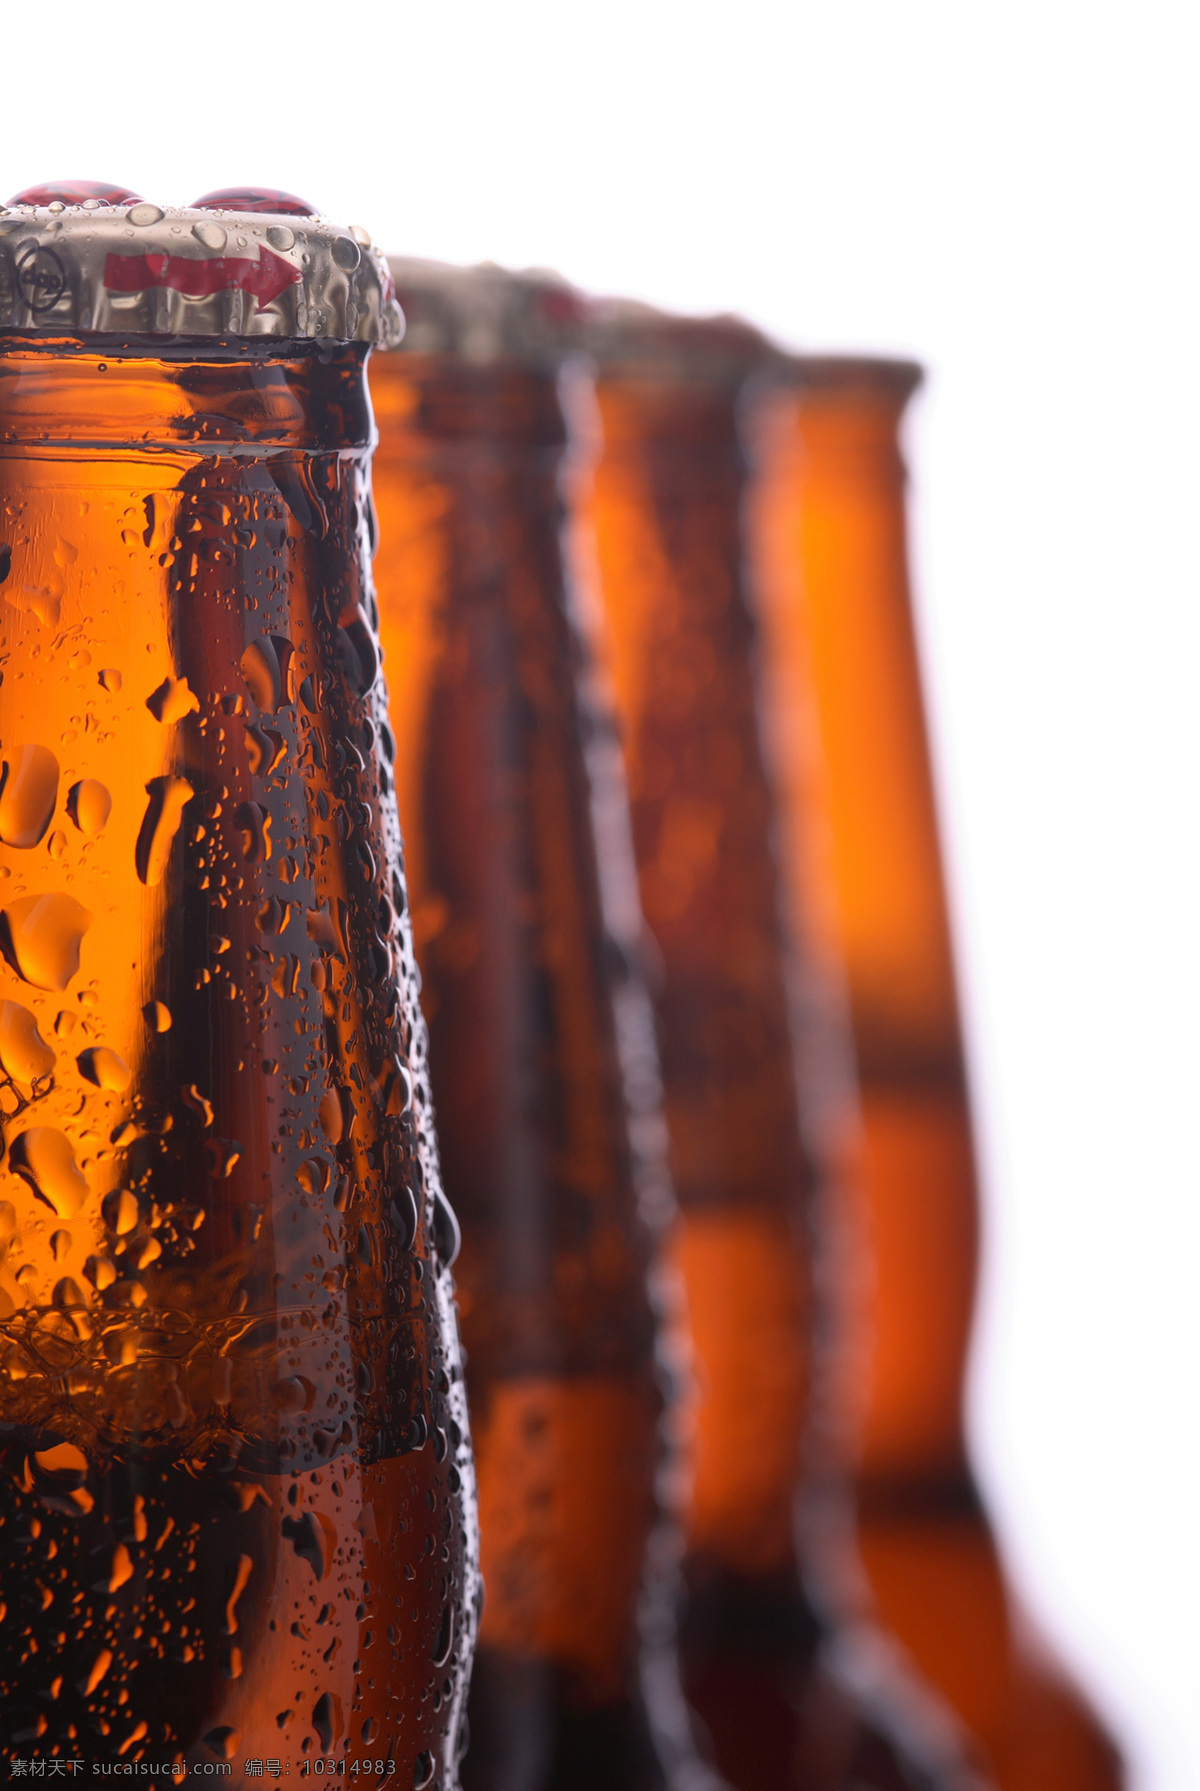 啤酒 餐饮美食 焦点 啤酒瓶 饮料酒水 重复 beer啤酒 矢量图 日常生活